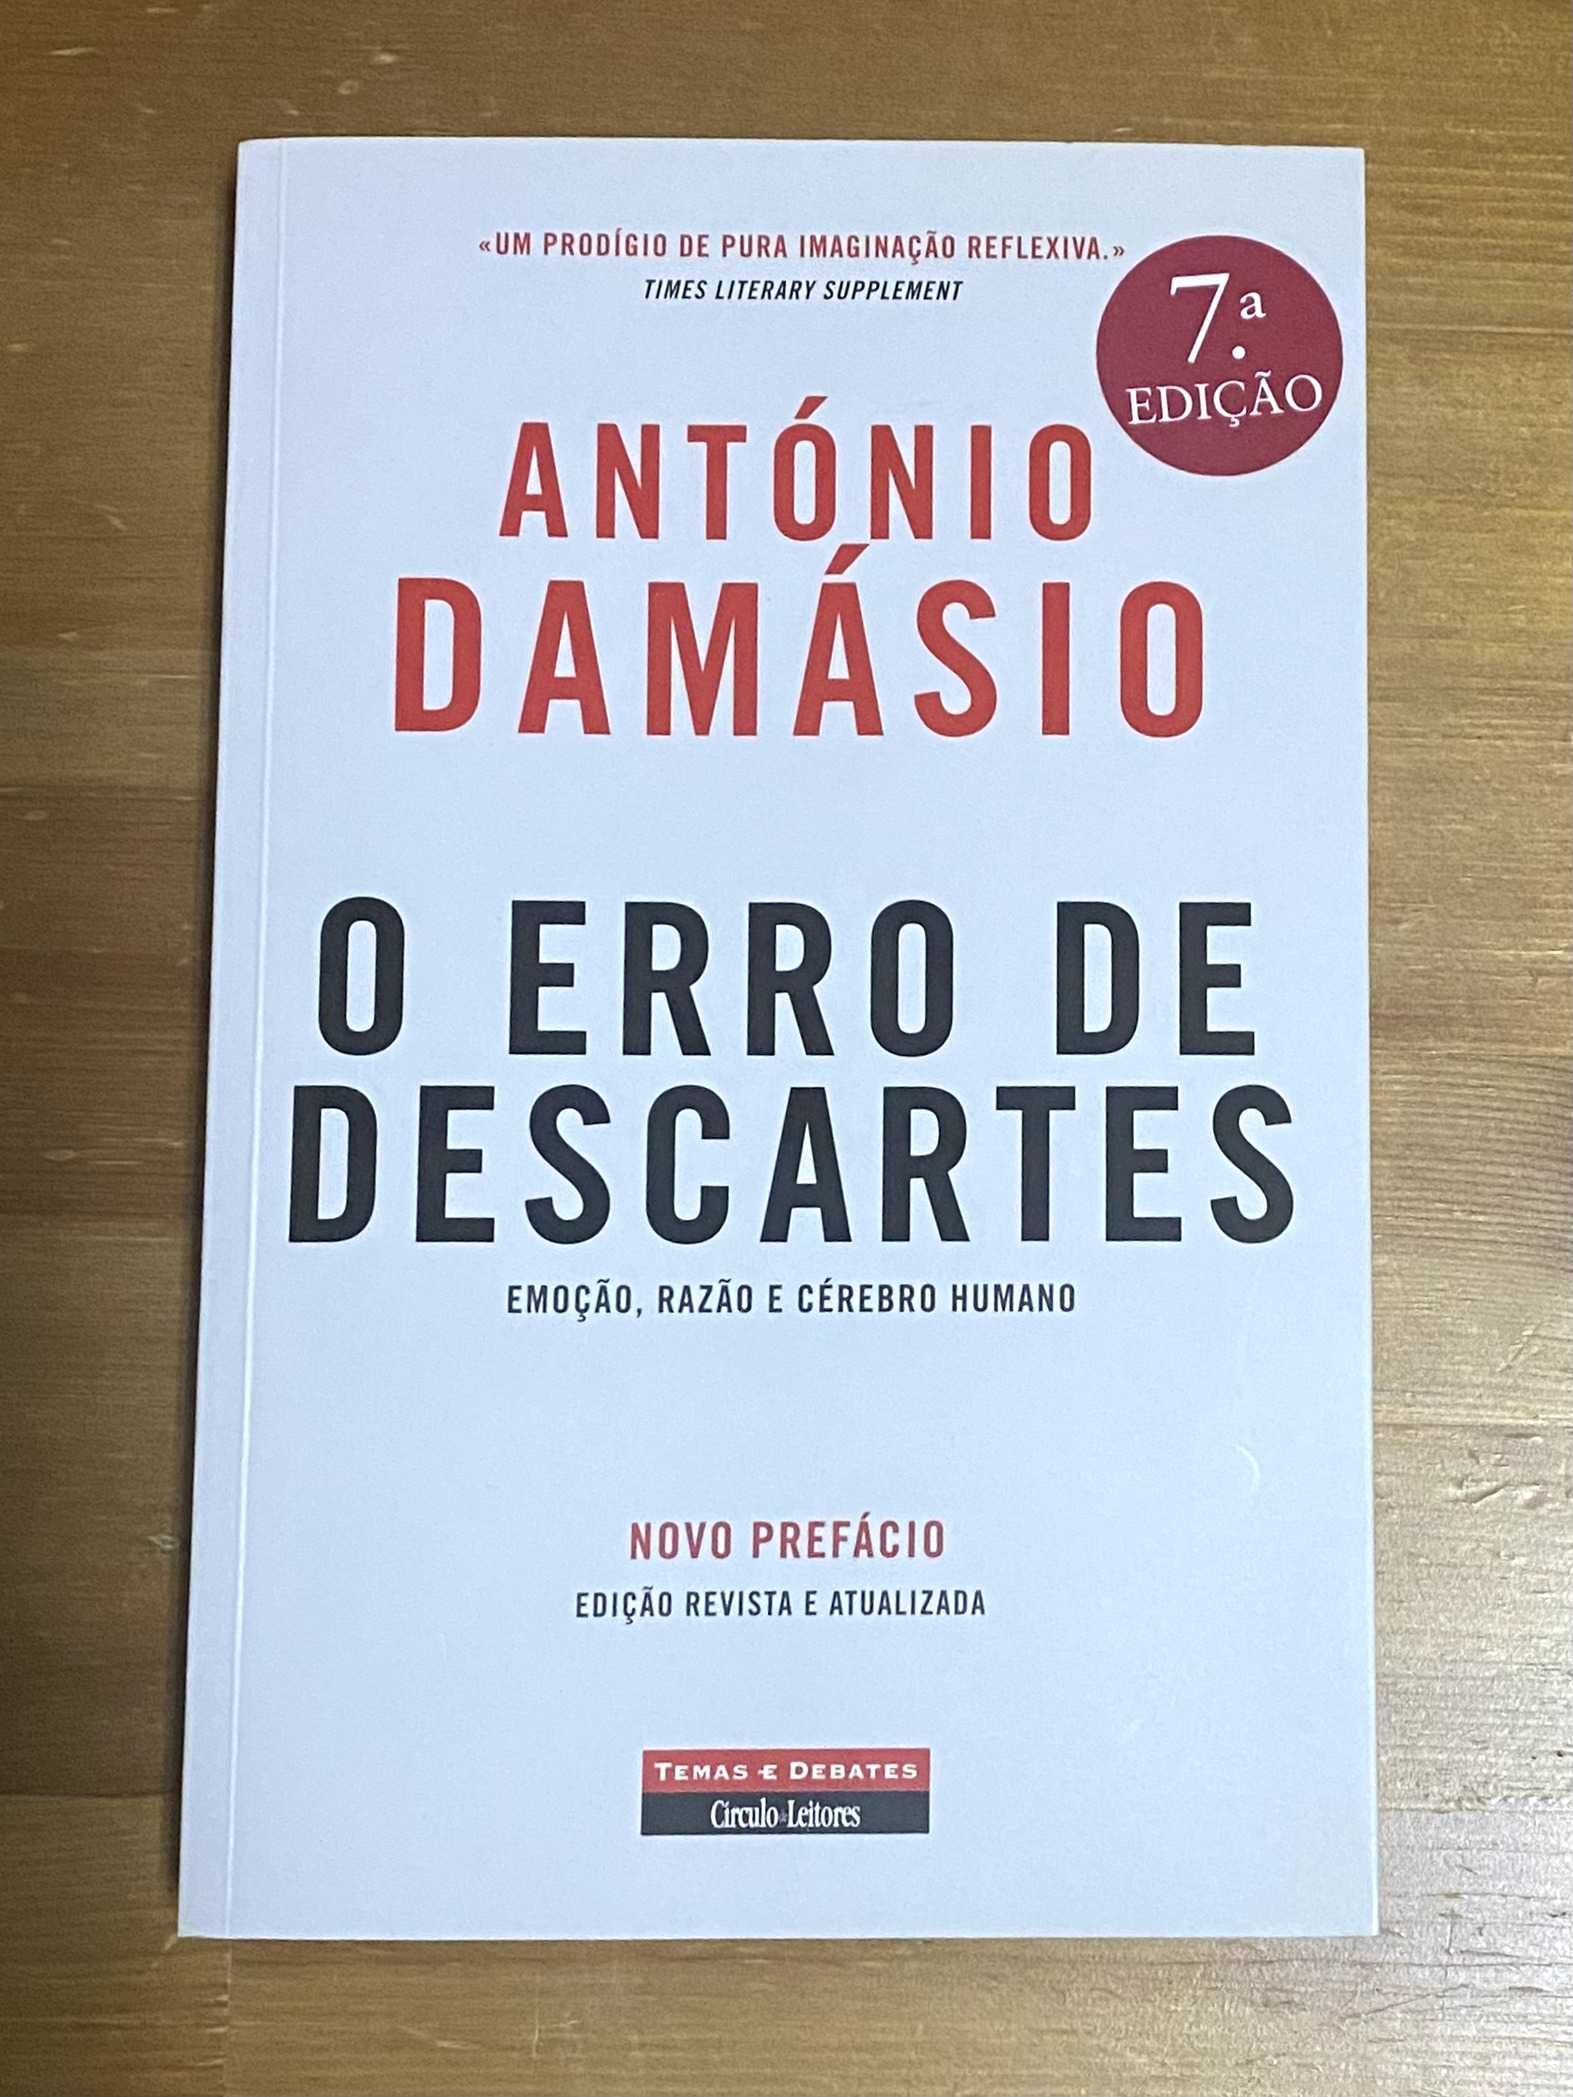 Livro "O Erro de Descartes" de António Damásio